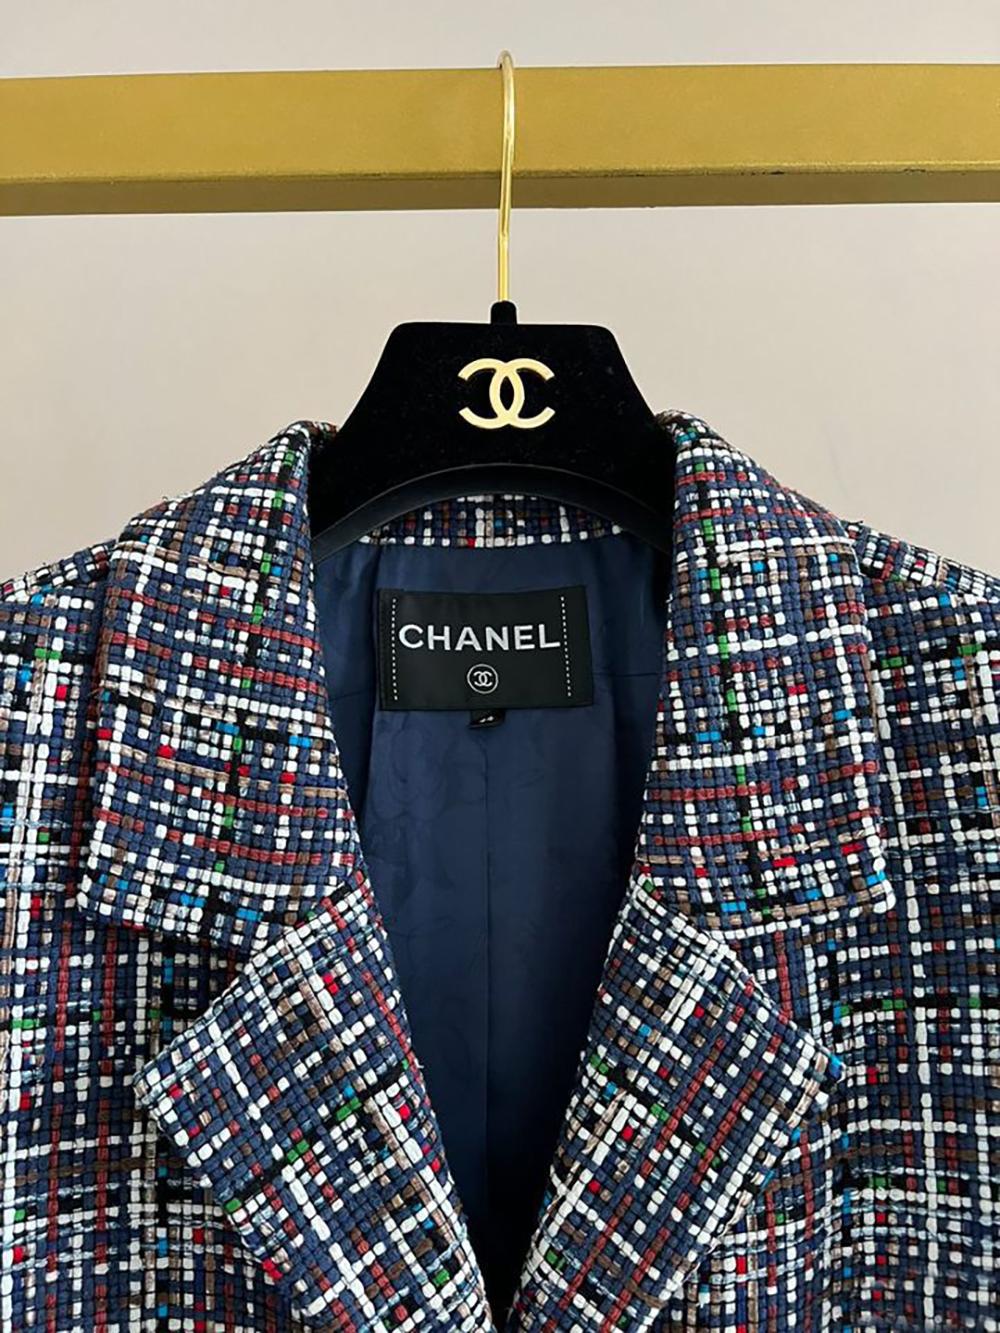 Chanel Kate Middleton Style Ribbon Tweed Jacket 1